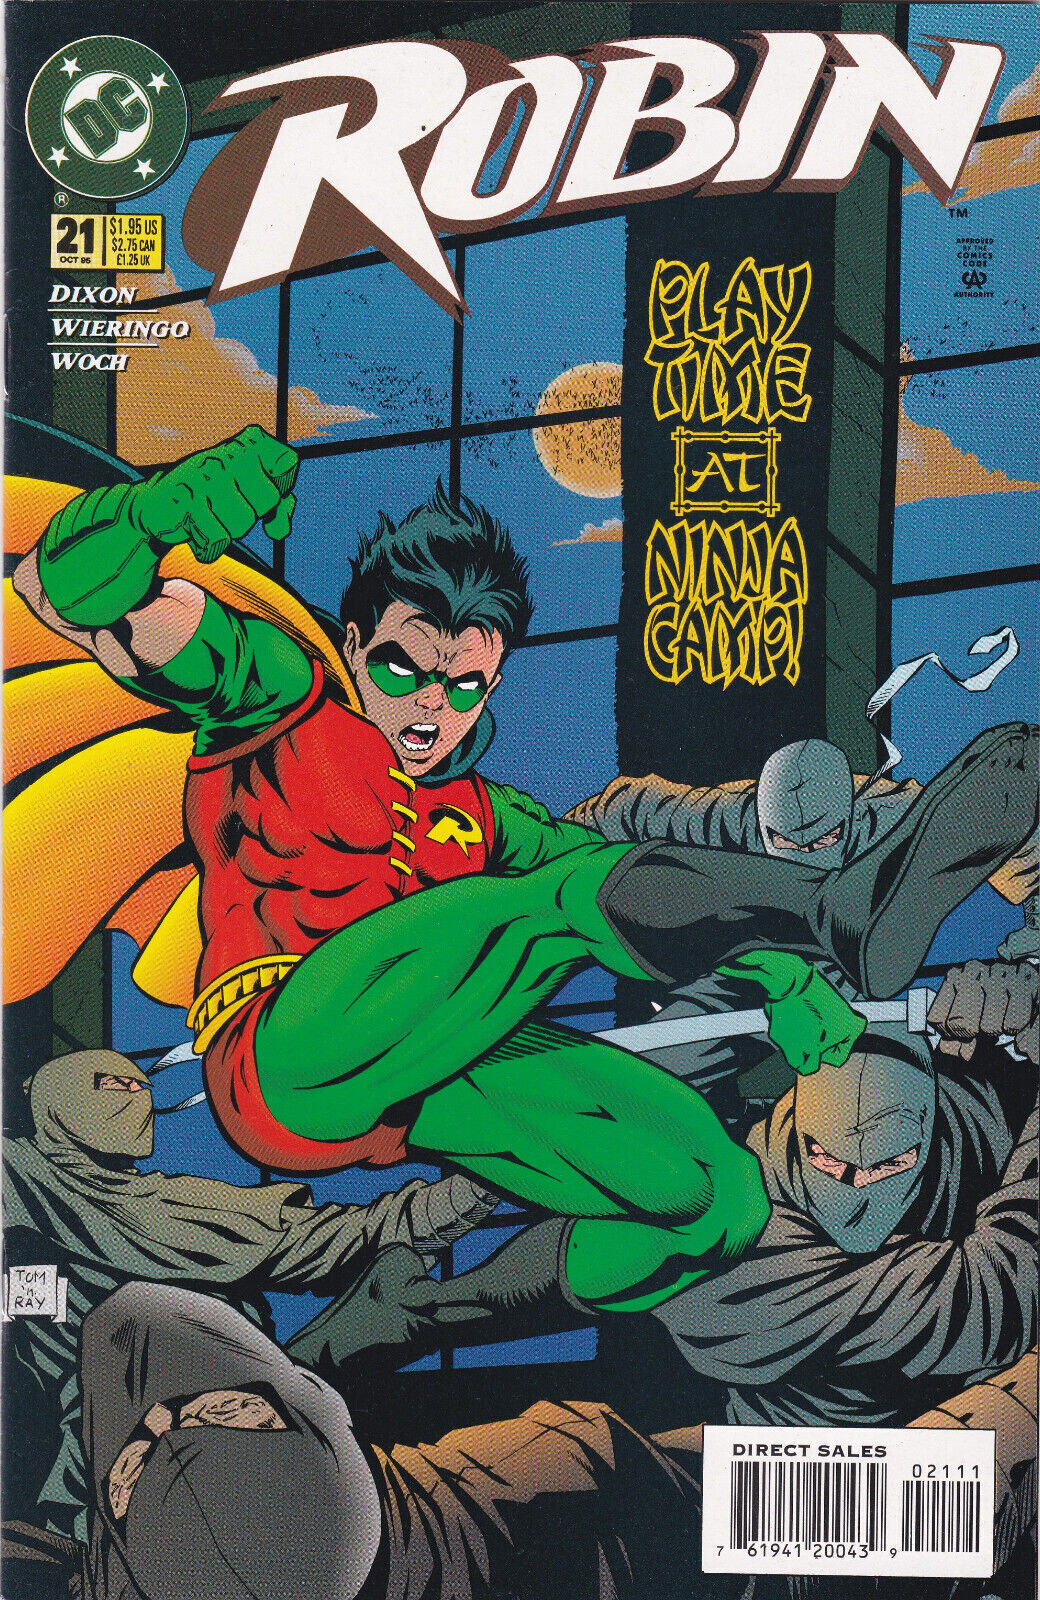 Robin #21, Vol. 2 (1993-2009) DC Comics, High Grade